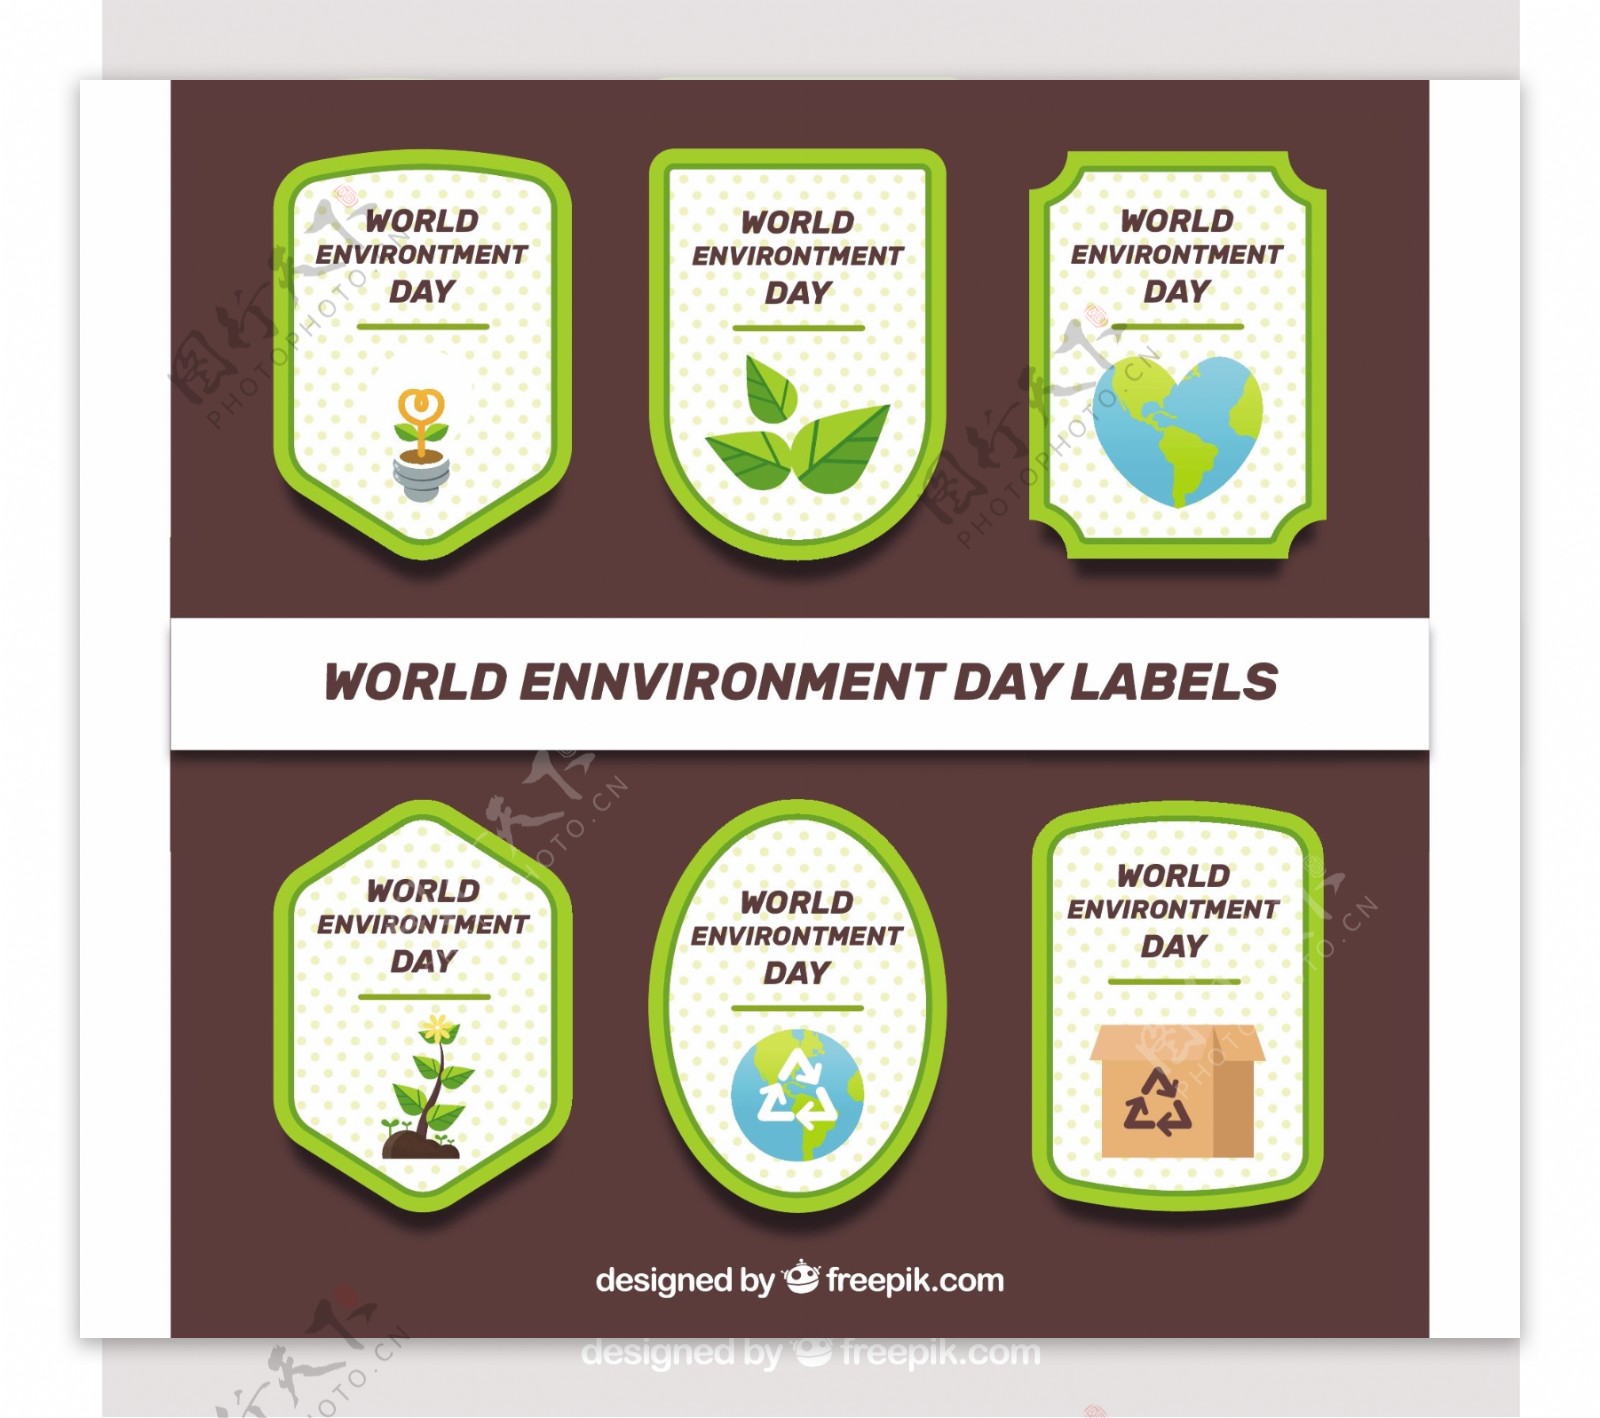 世界环境日各种形状背景标签设计模板素材